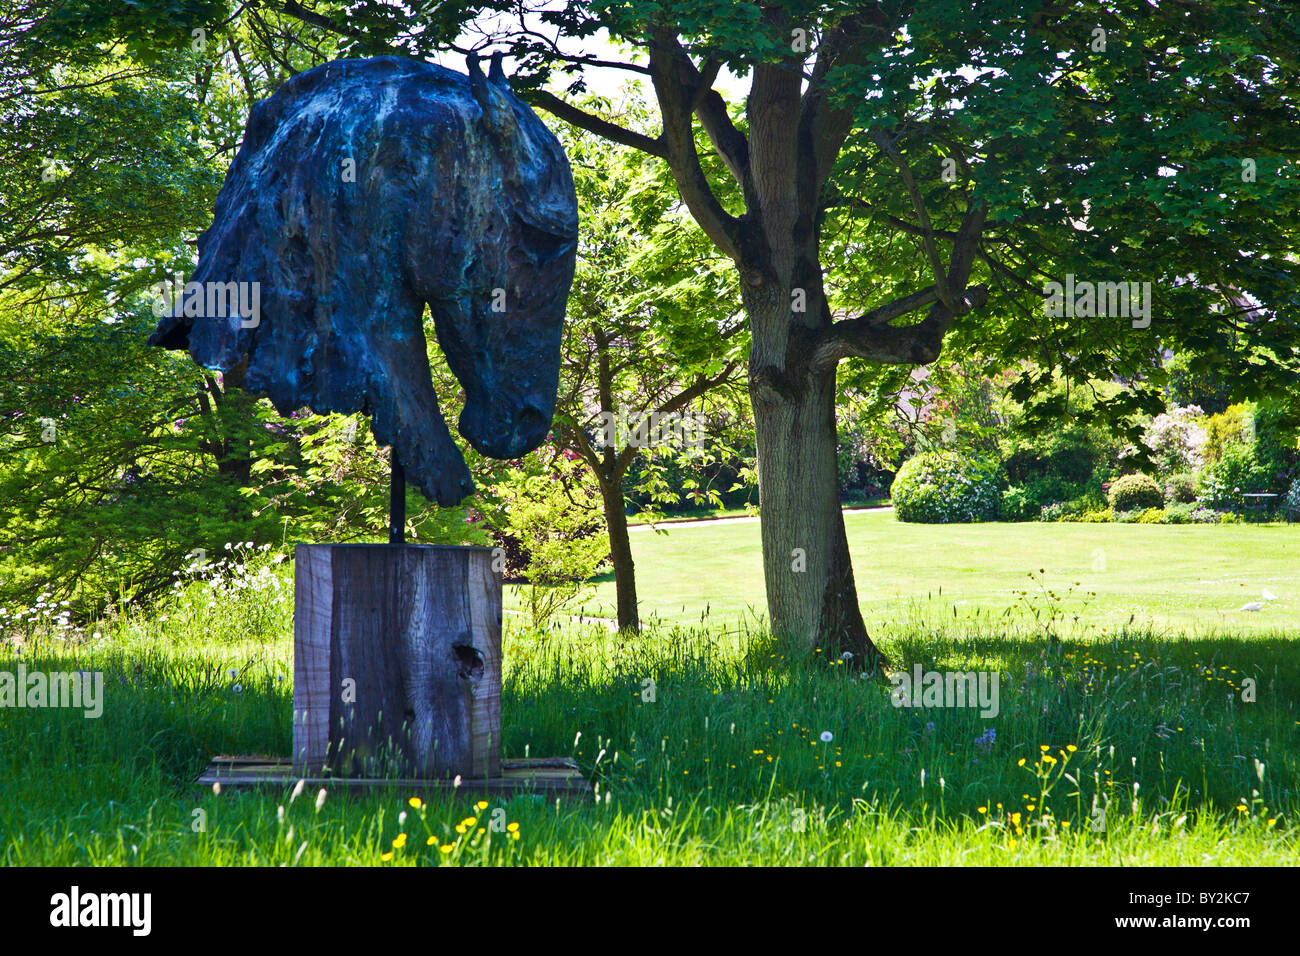 Ein moderner Garten Skulptur oder Kunst Werk eines Pferdekopfes in einer schattigen Ecke eines englischen Gartens im Sommer Stockfoto